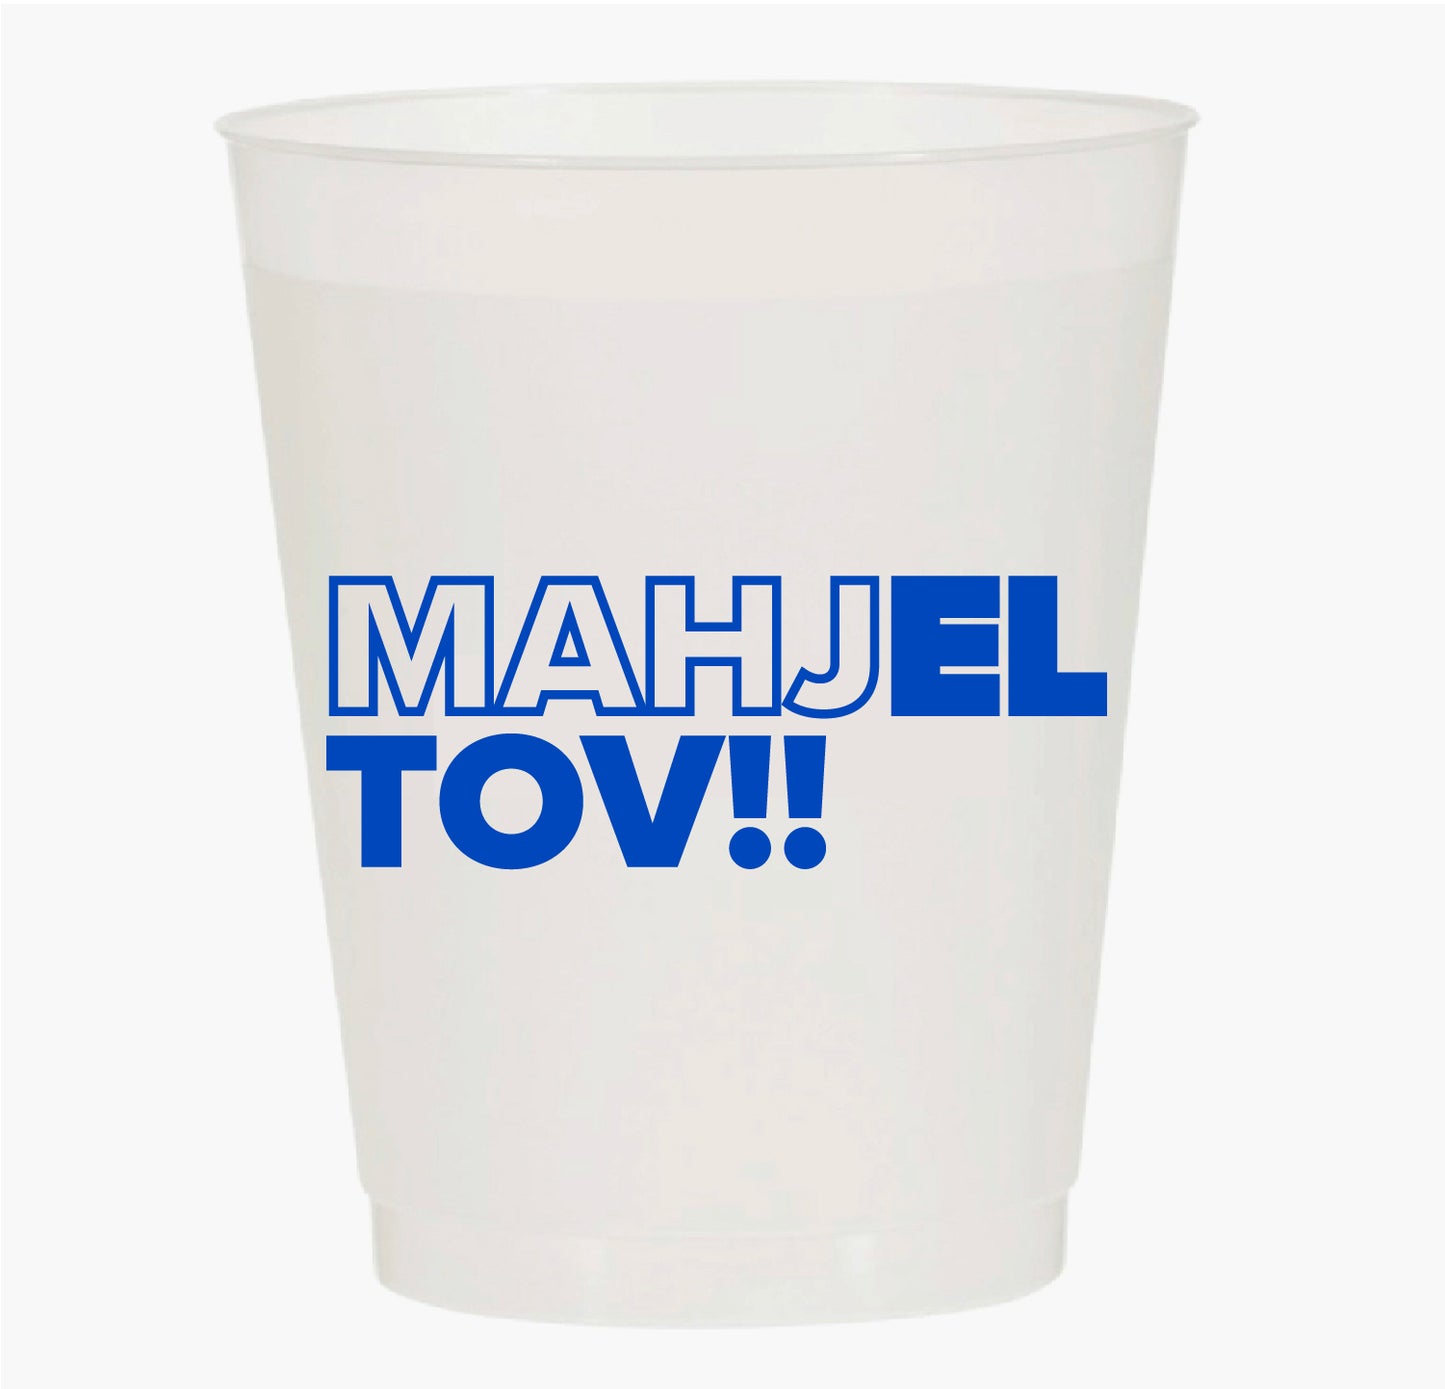 “MAHJEL TOV” FROST FLEX CUPS